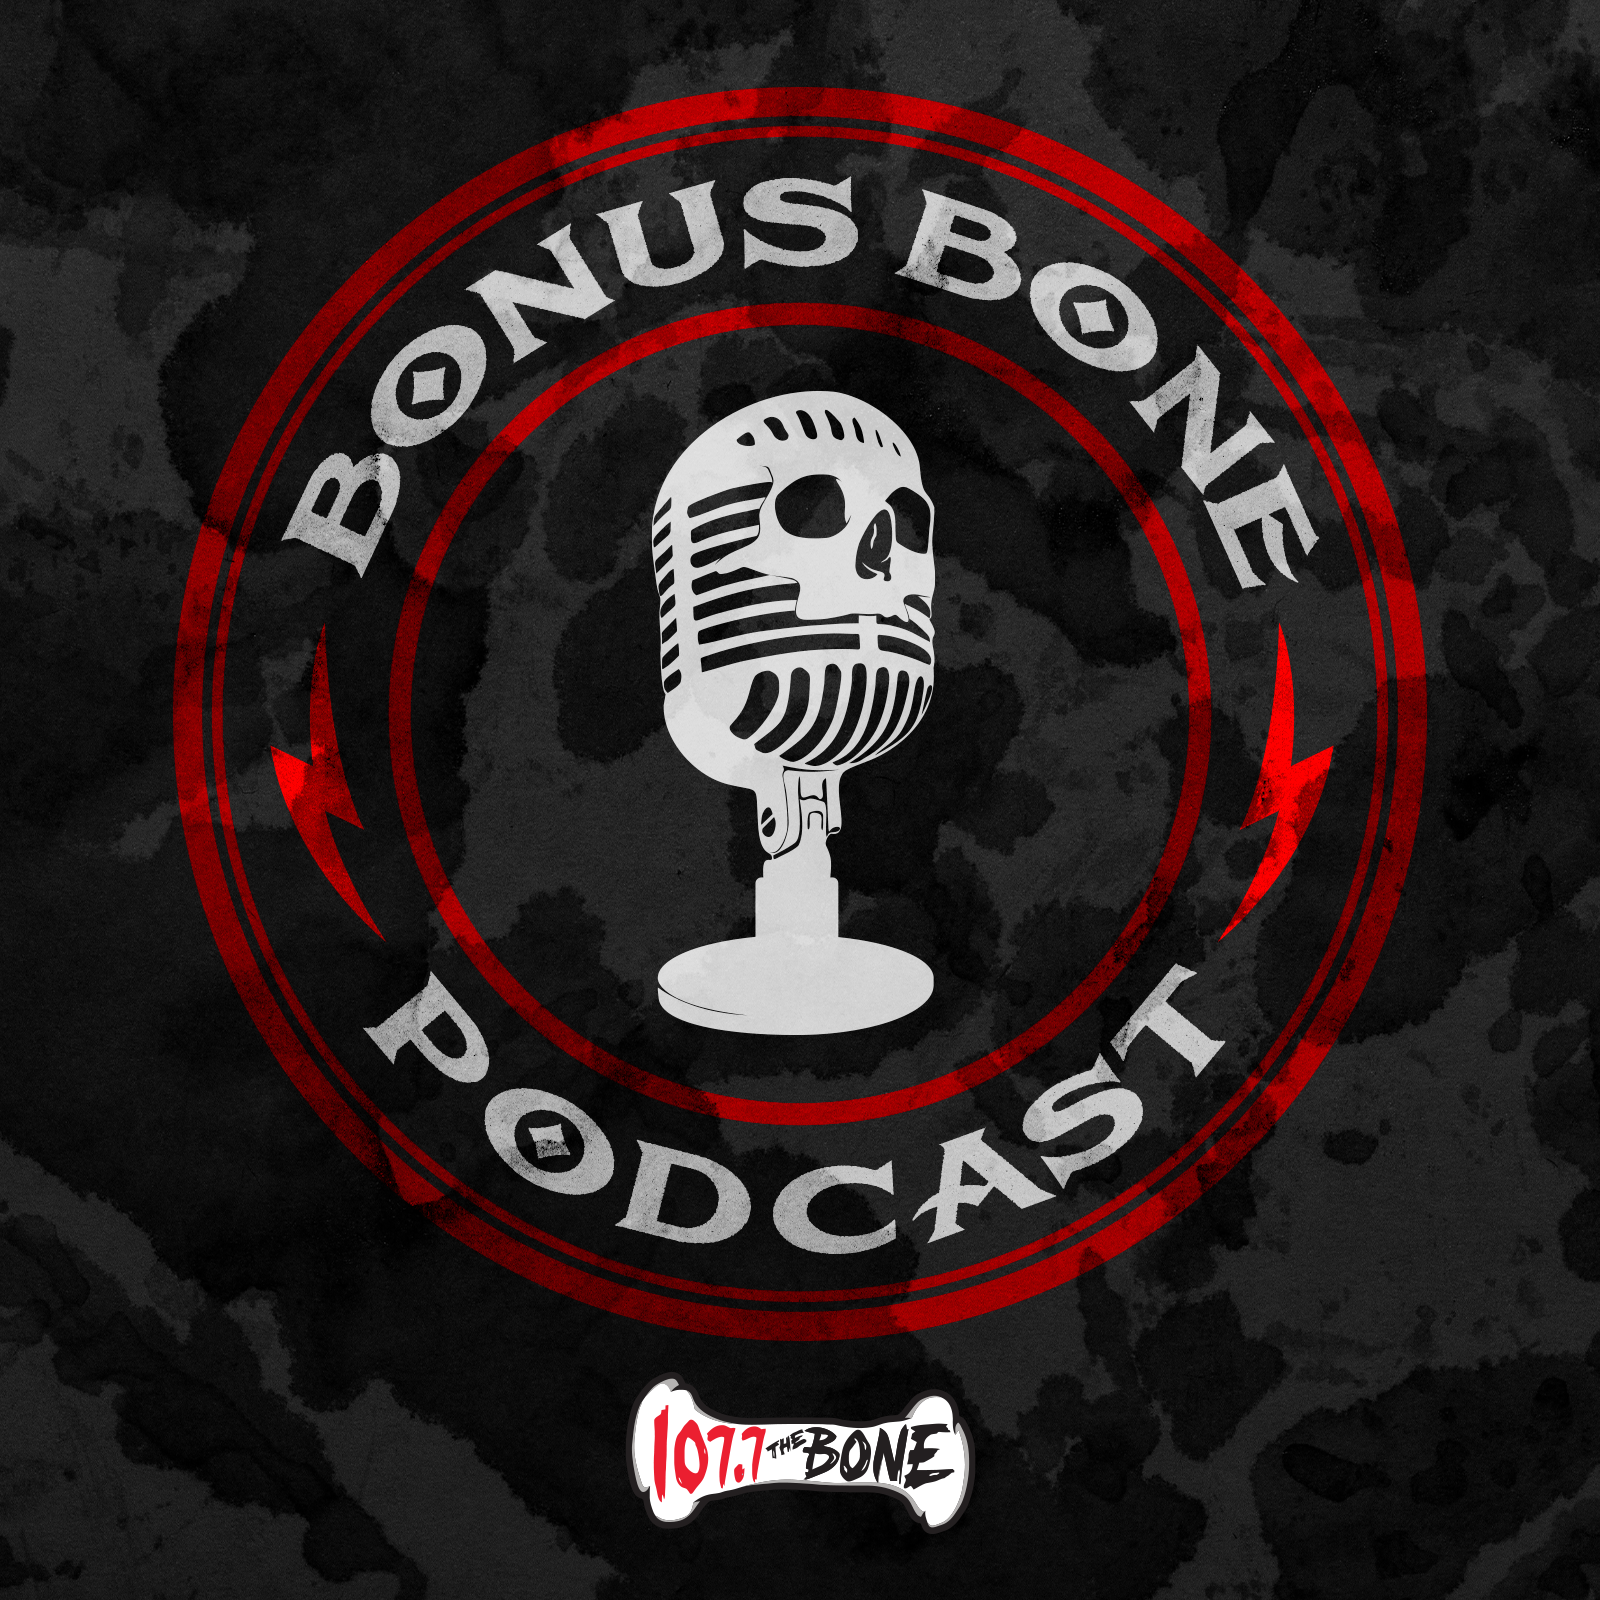 The Bonus Bone: What Are Your Biggest Pet Peeves?